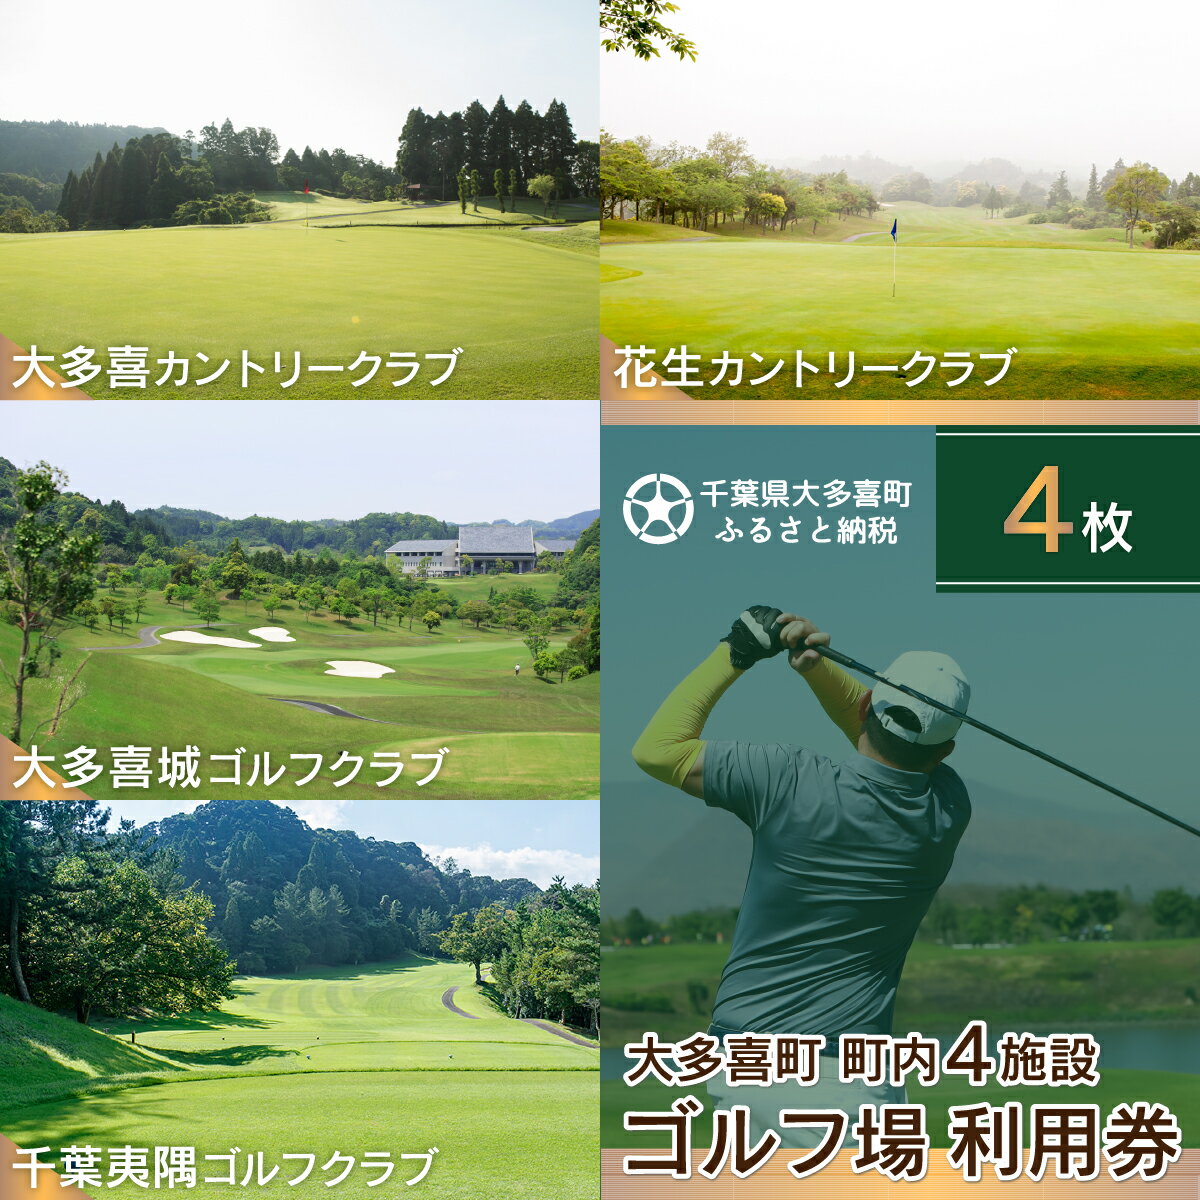 【ふるさと納税】大多喜町内ゴルフ場利用券 4枚 ゴルフ ゴル